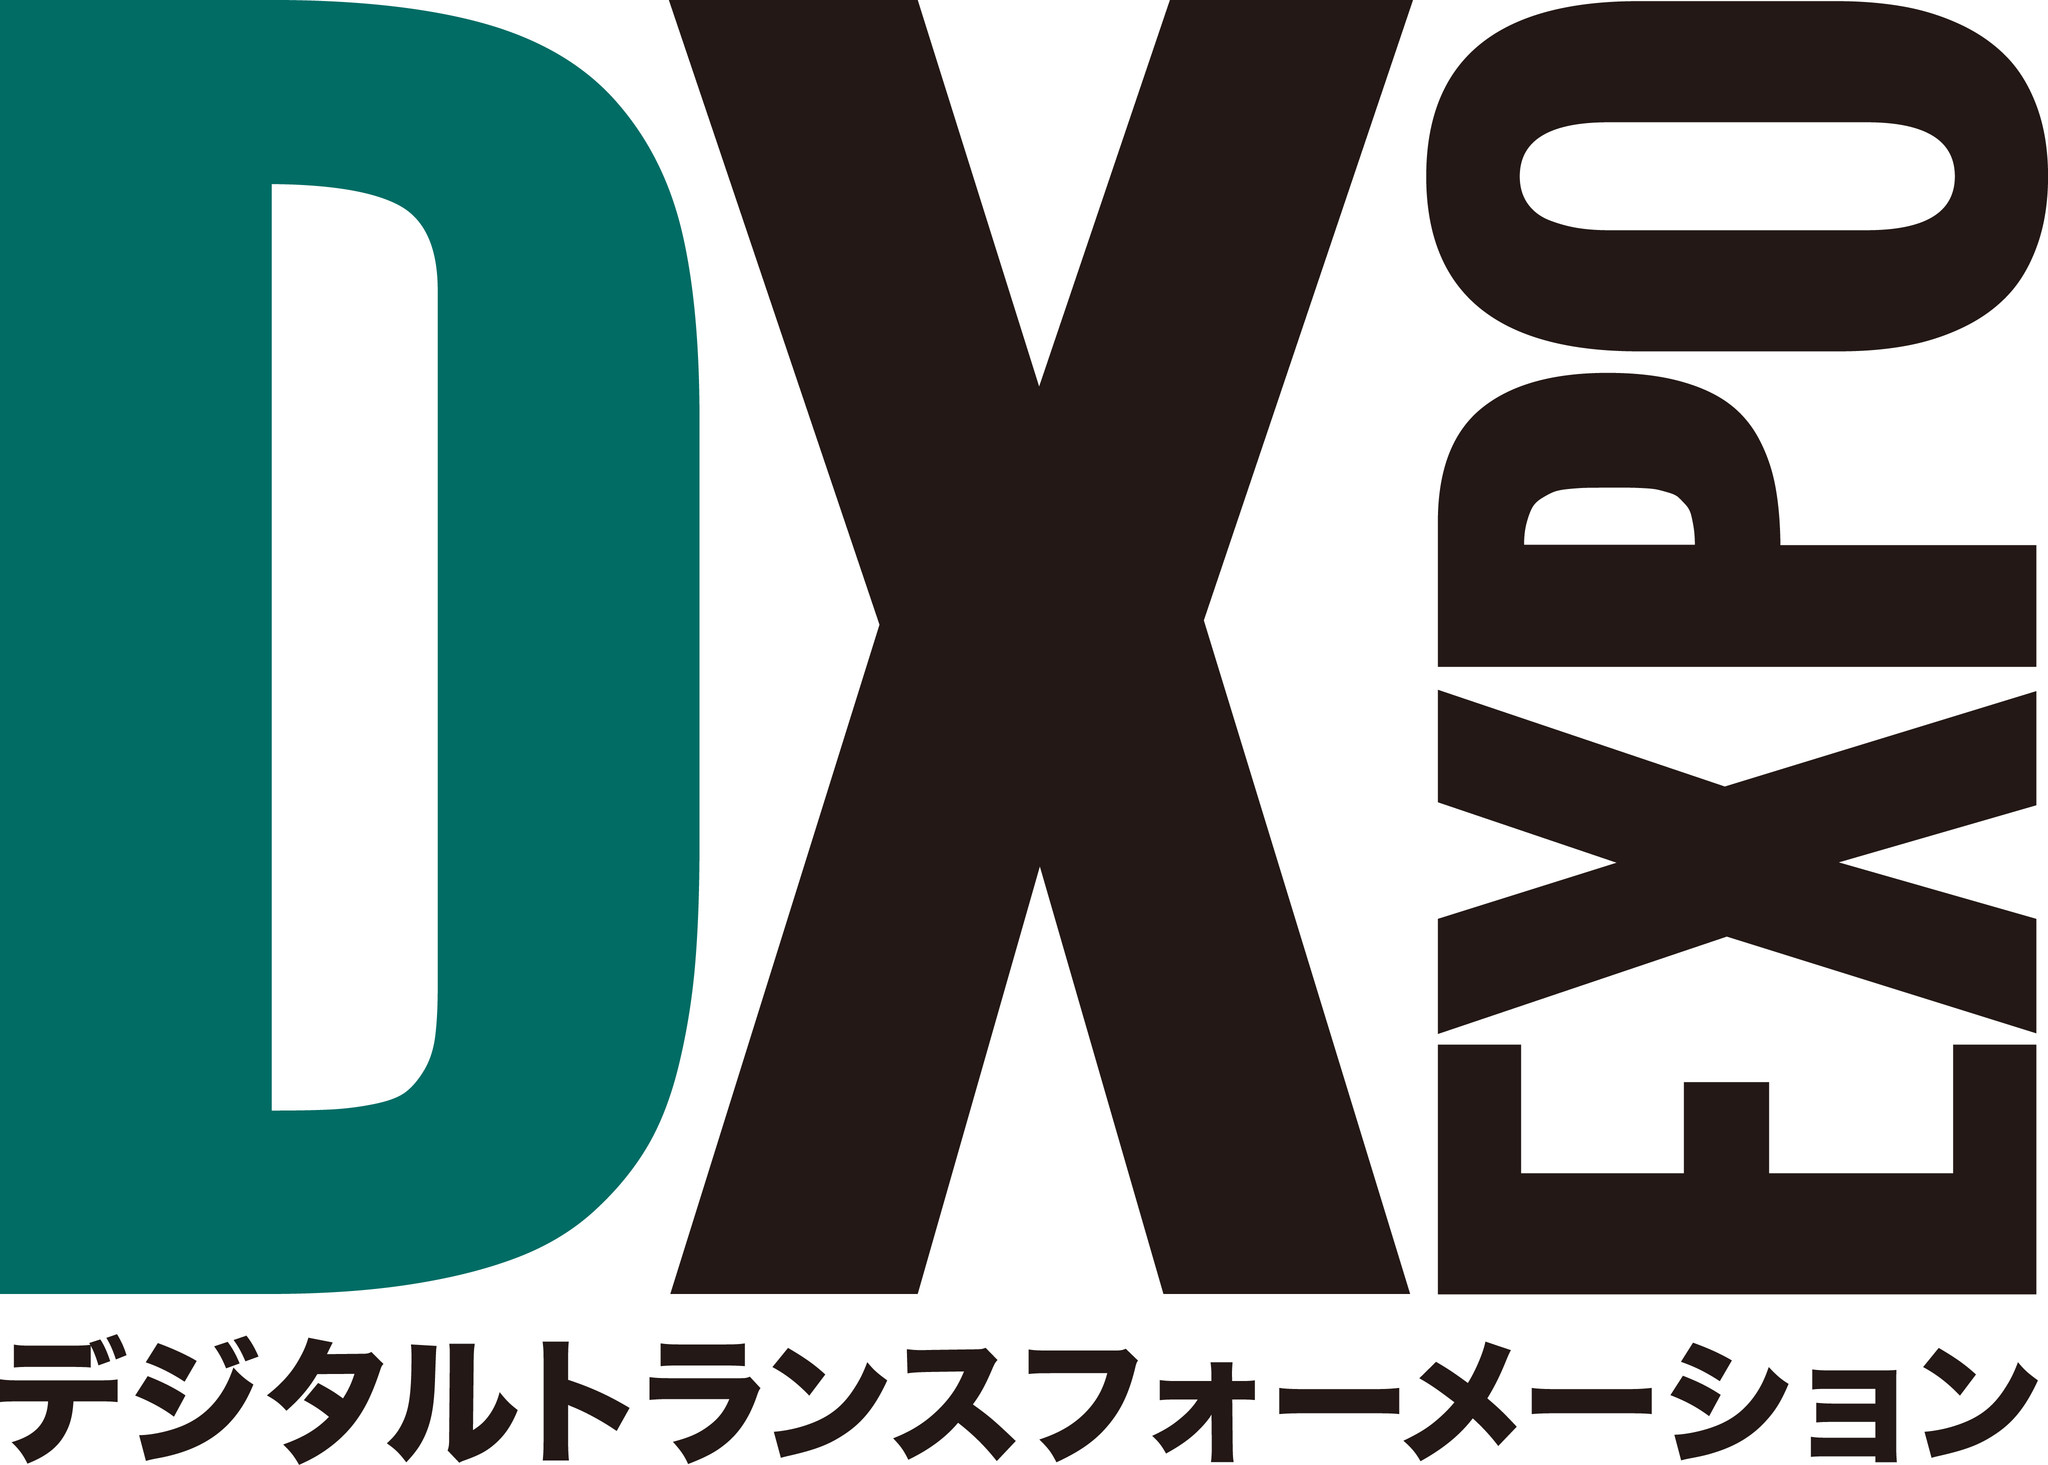 新規開催 Dx Expo 新しい生活様式 Expo 来年 22年 3月 大阪 東京 展示会実行委員会のプレスリリース